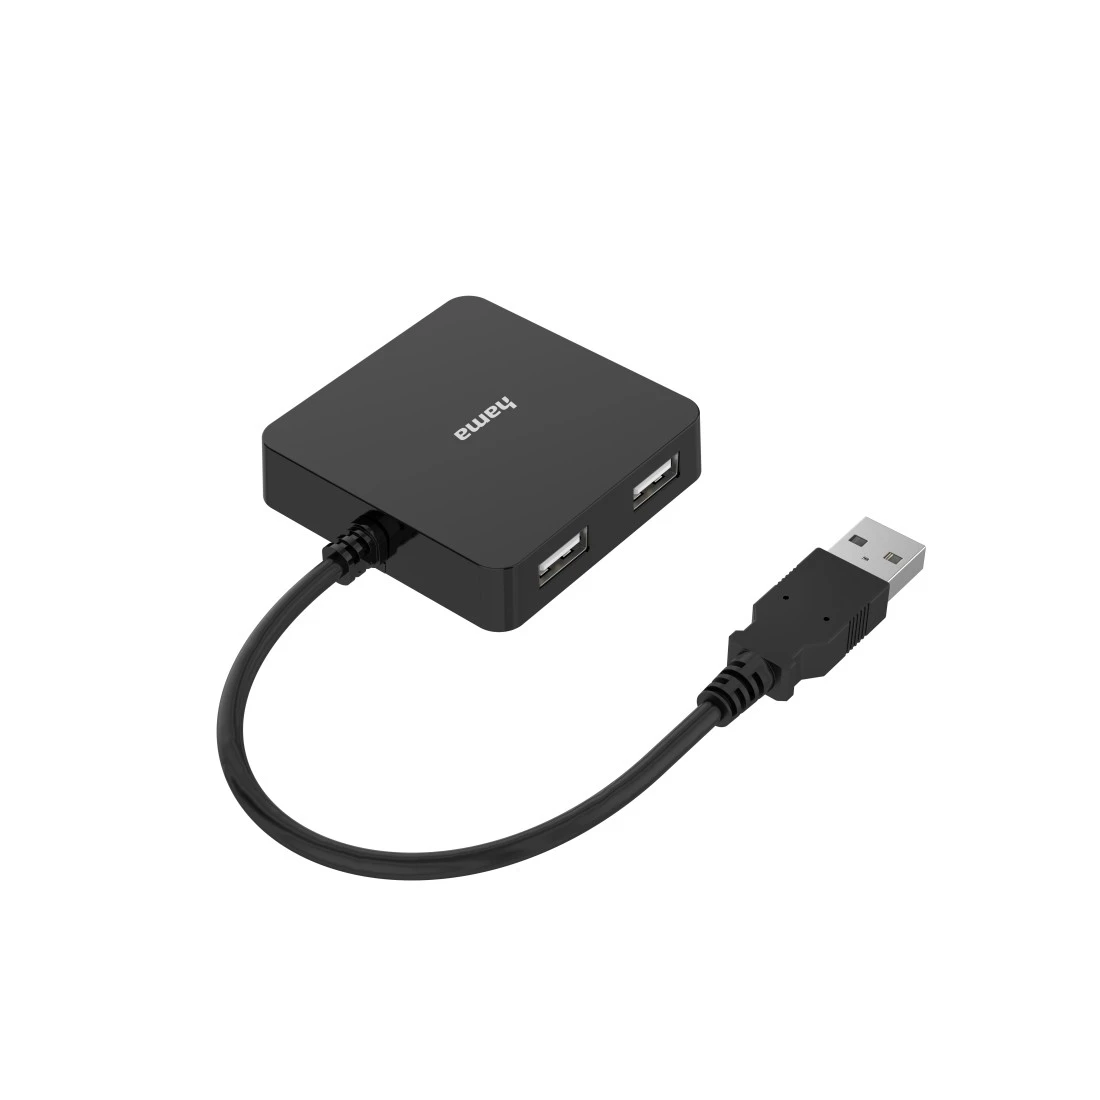 Hama USB 2.0 Hub Card Reader Tisch-Einbau 60/80mm 3x USB Port